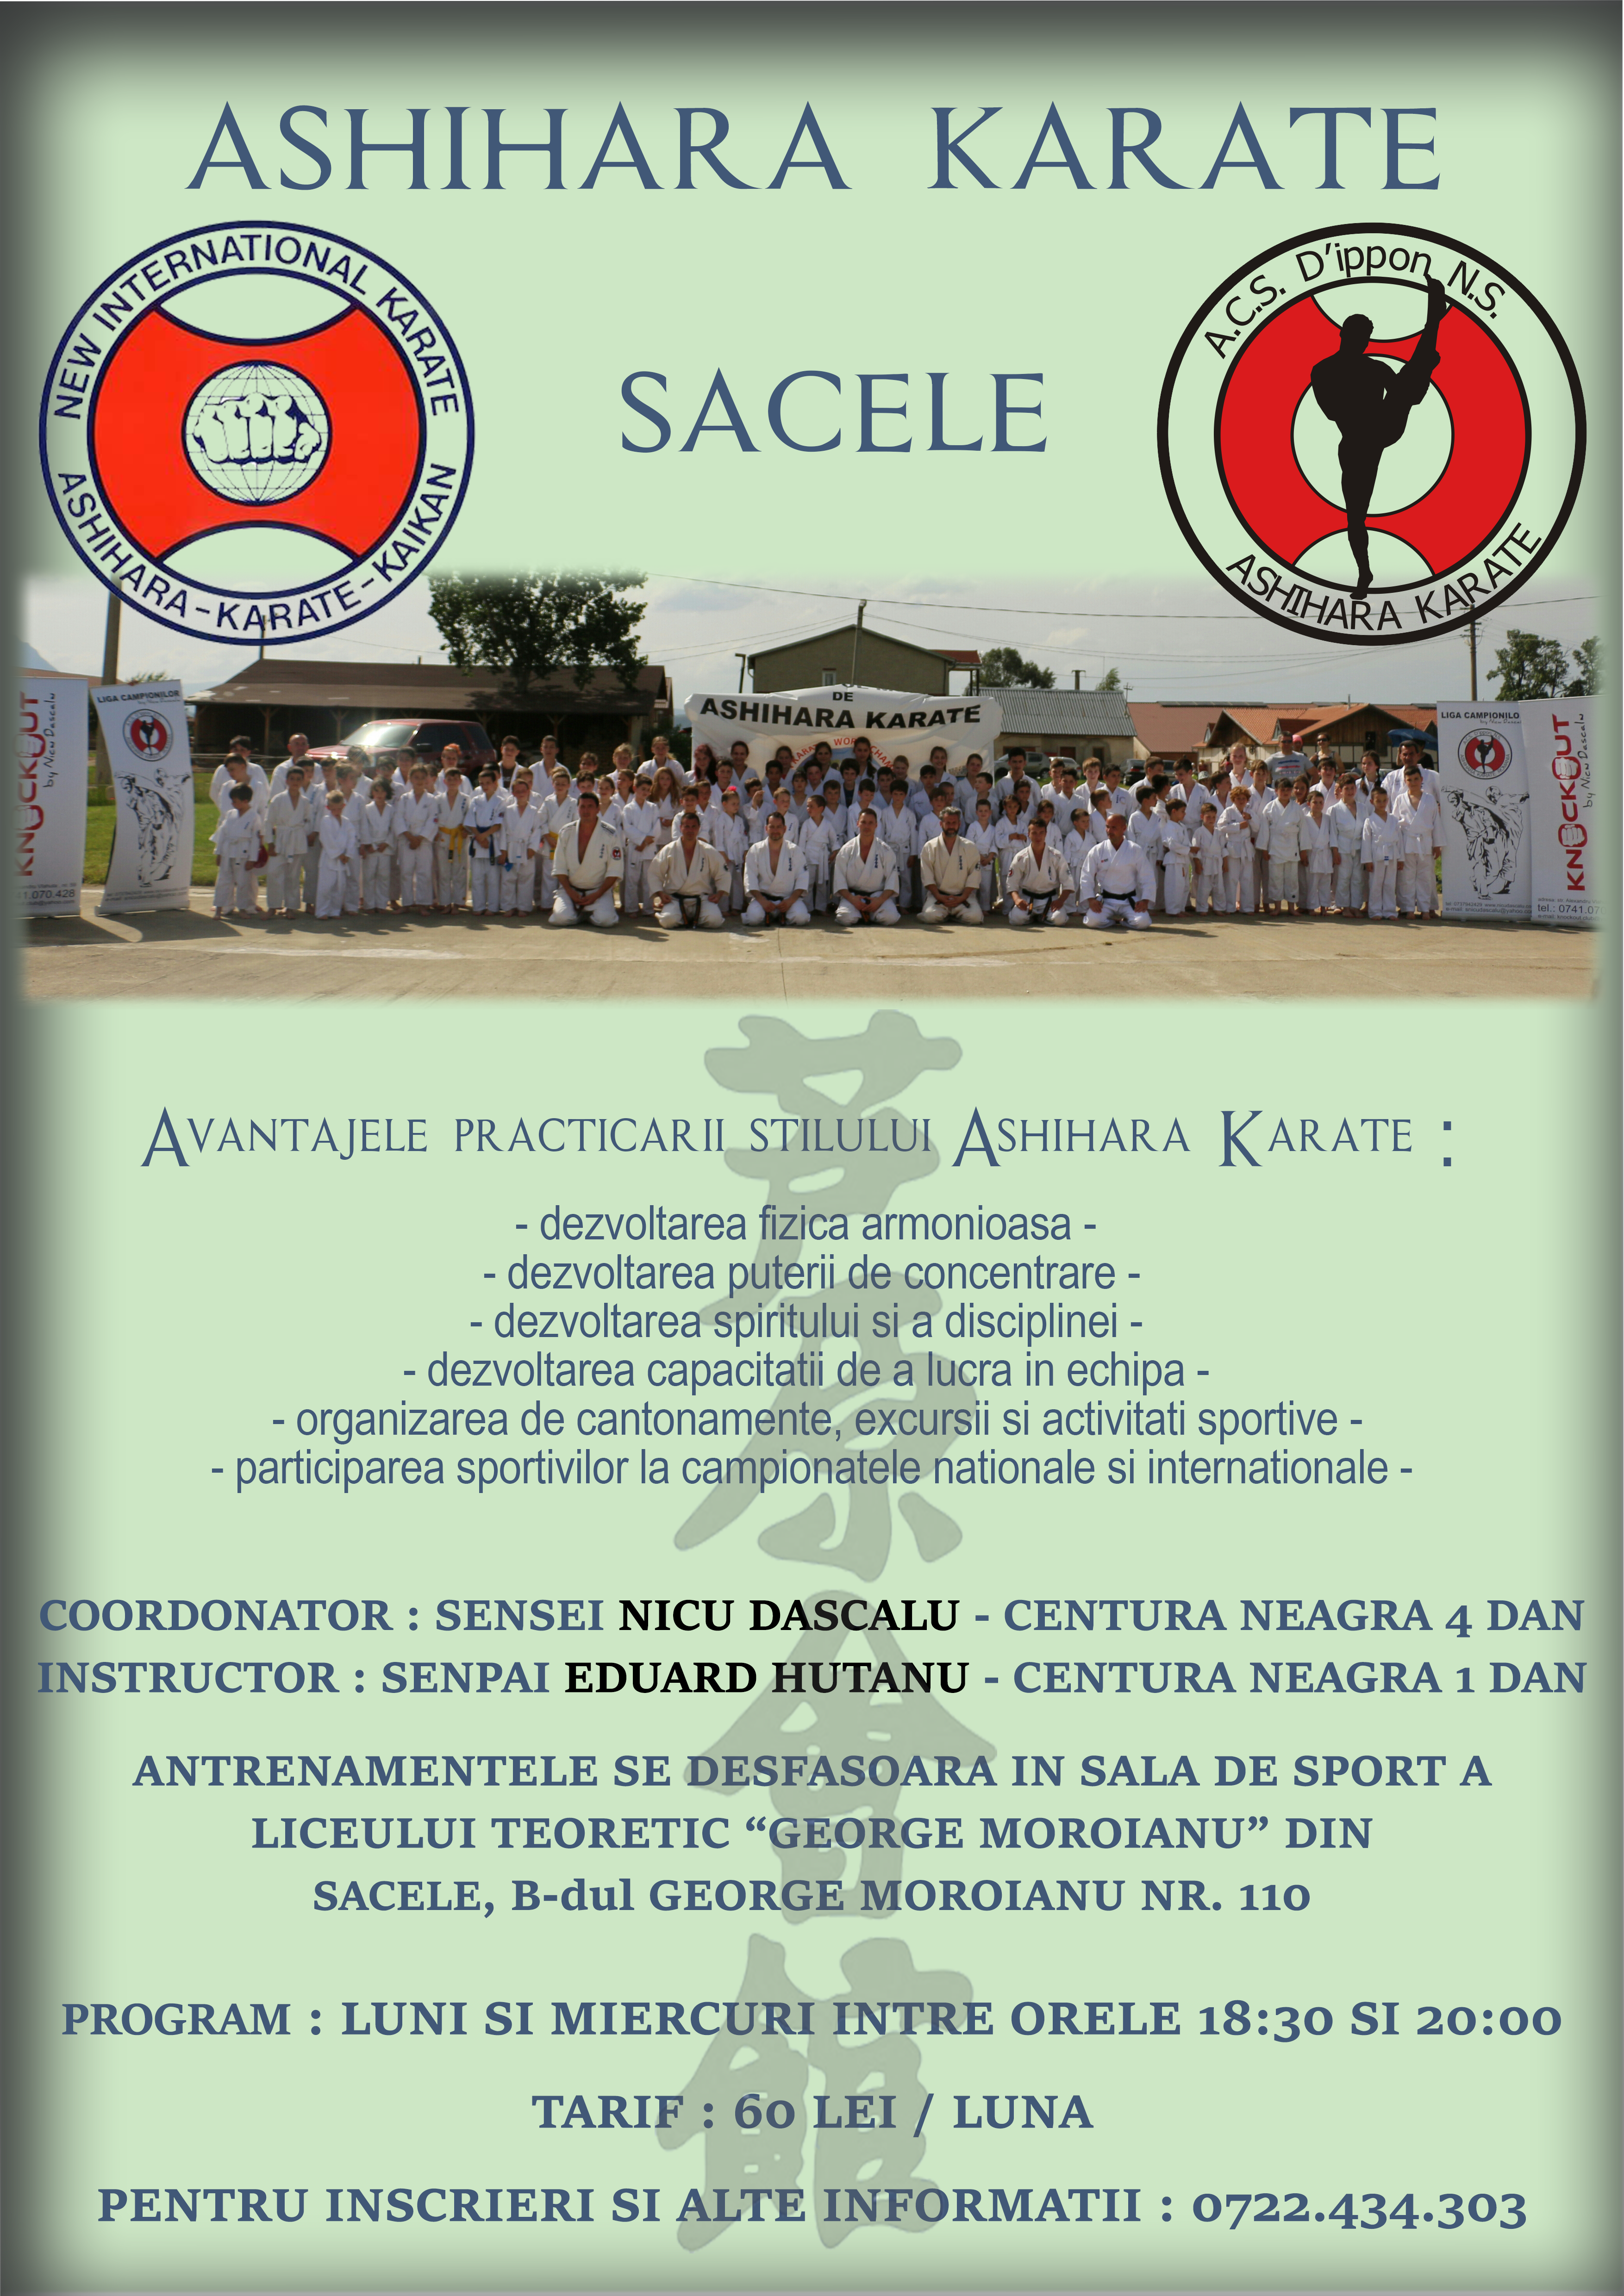 karate-sacele-beta-2